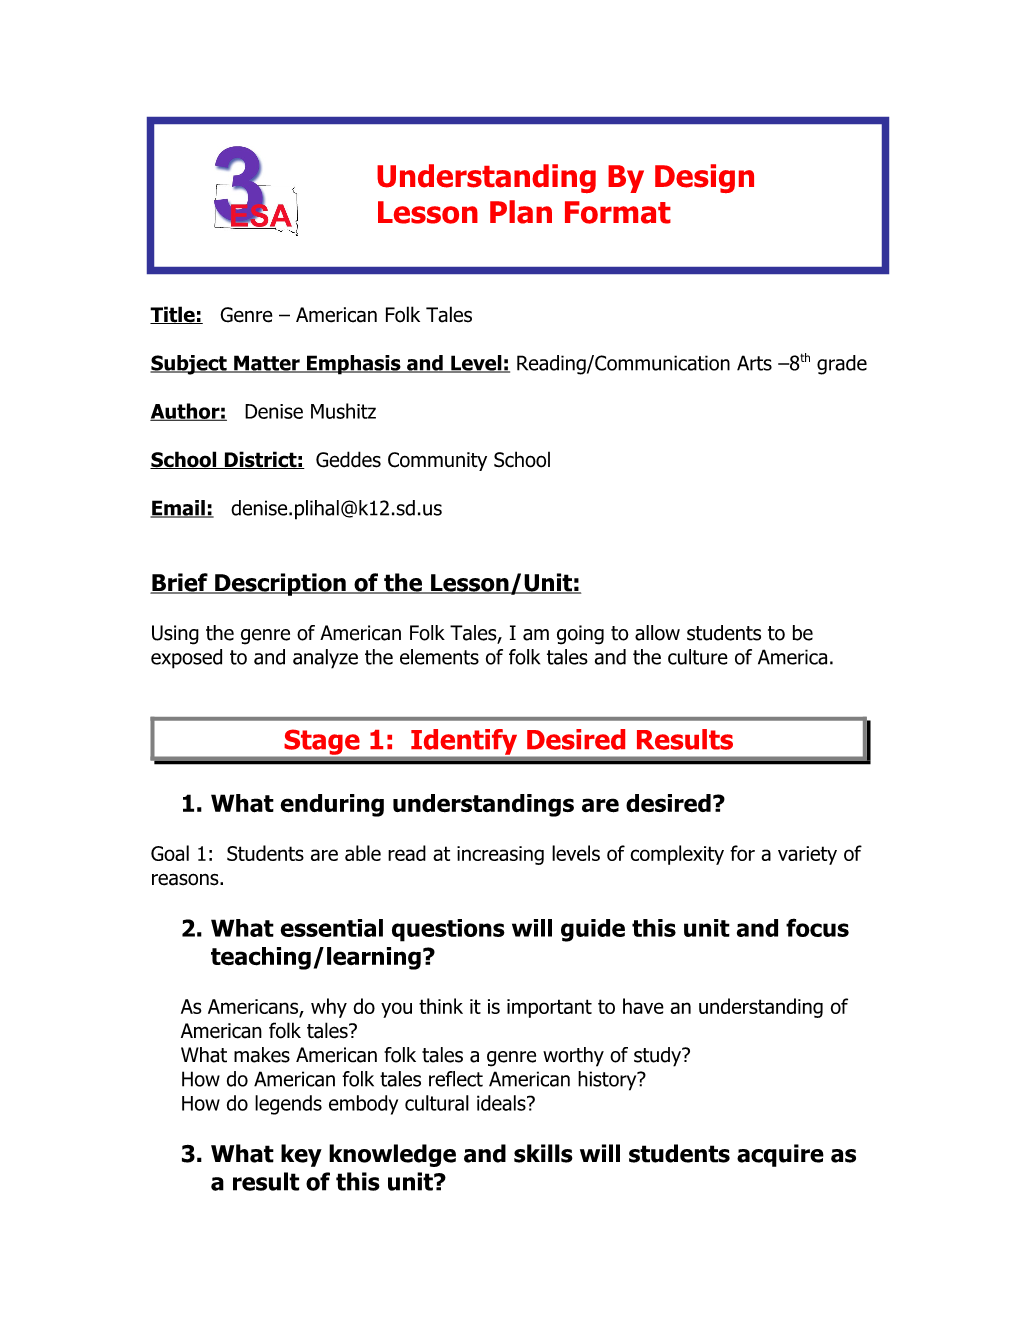 Understanding by Design s3